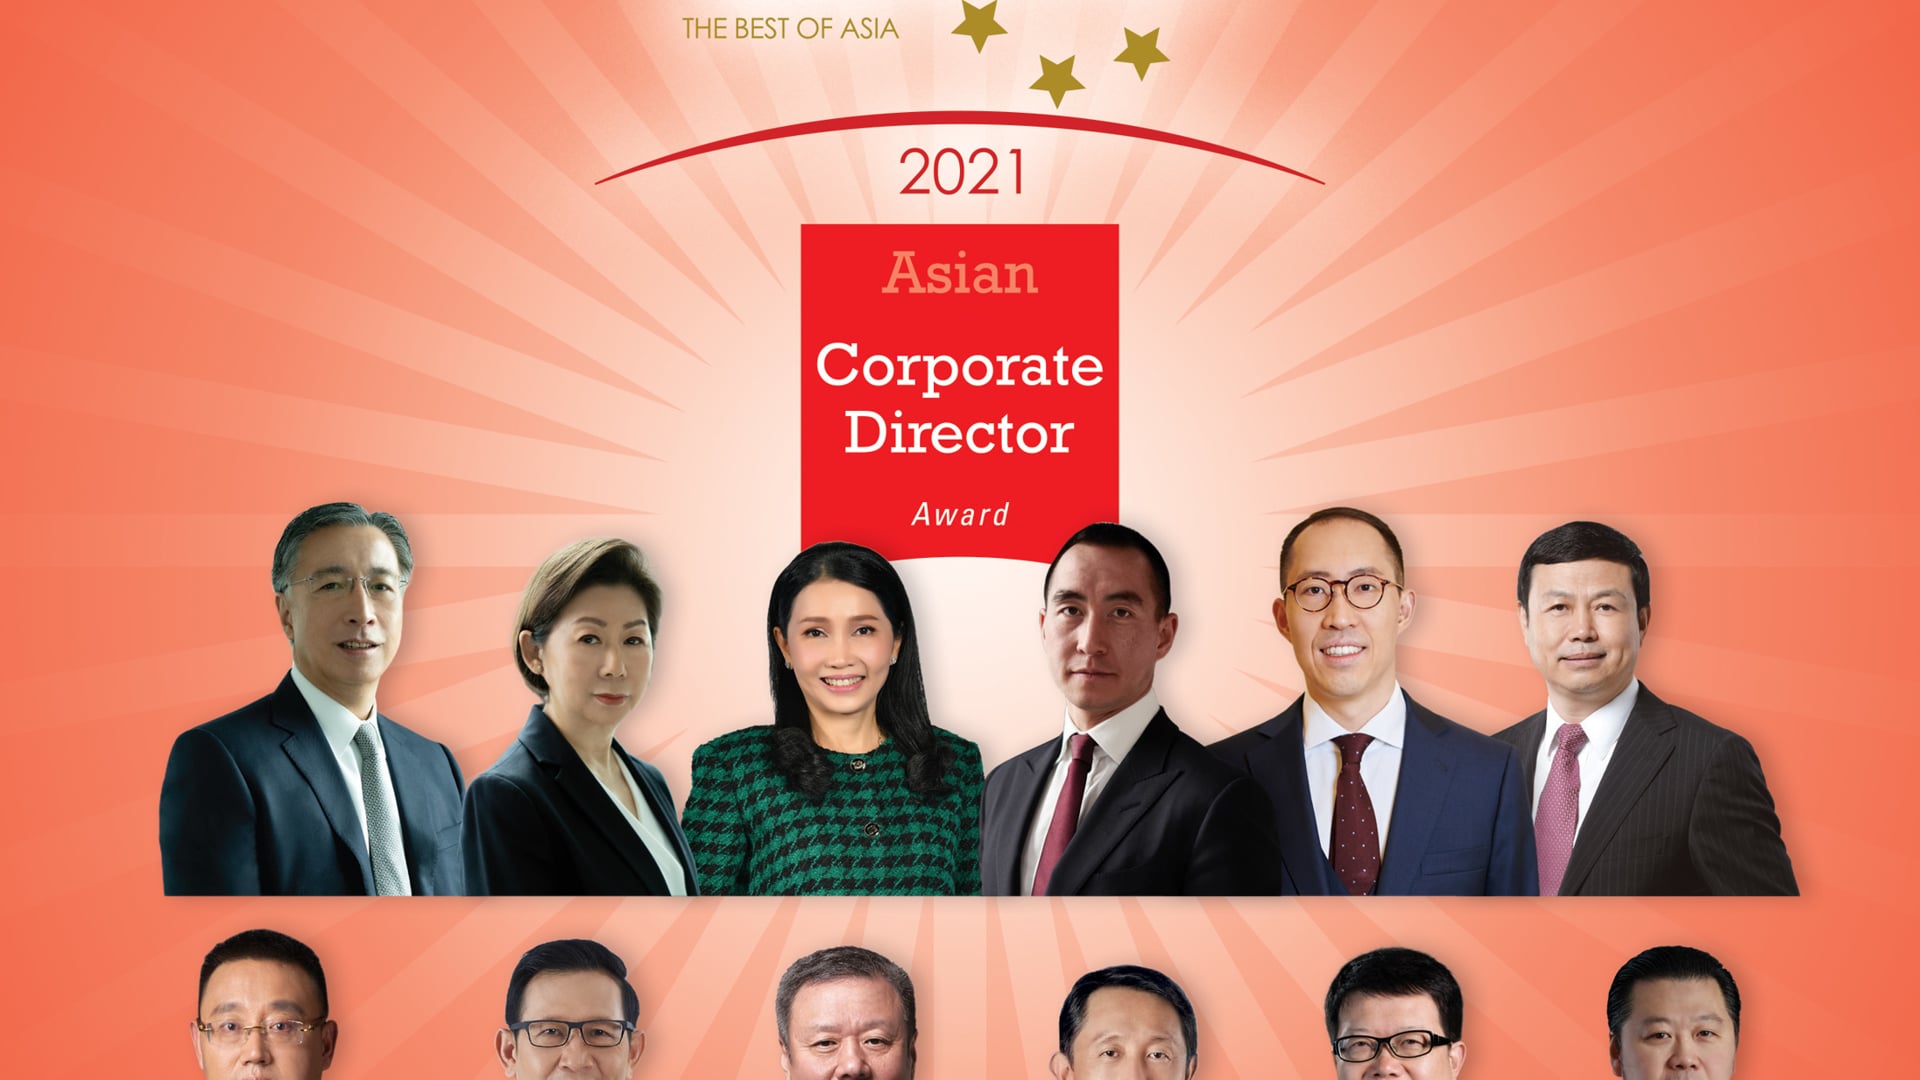 Asian Corporate Director Award 2021.mp4